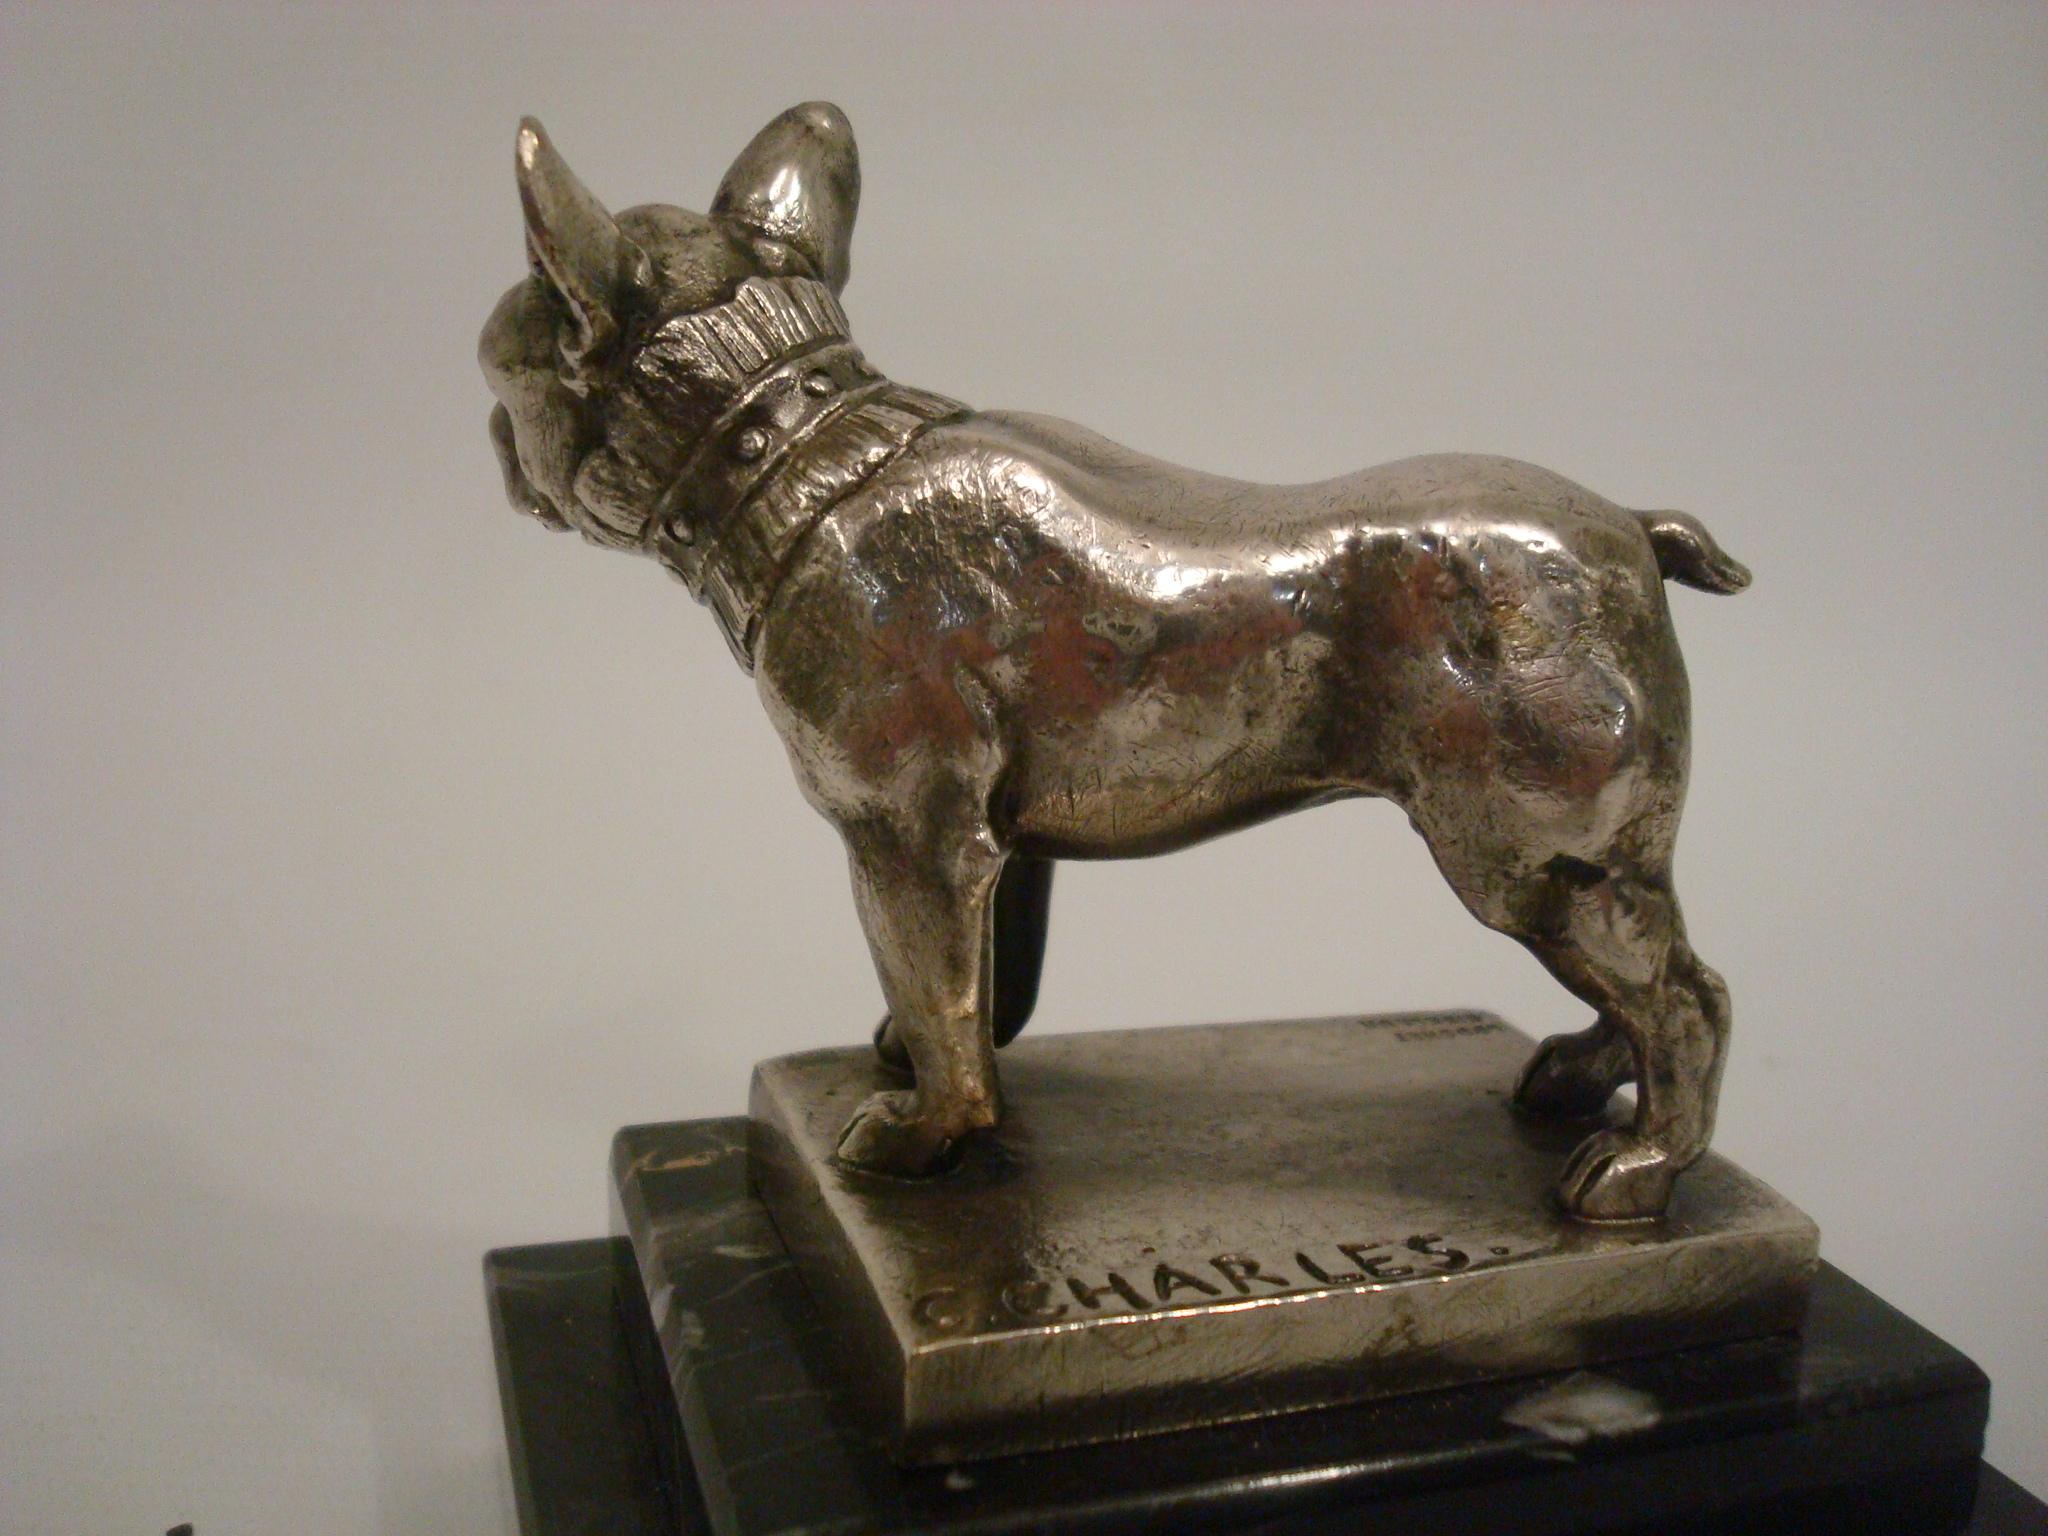 Argenté Sculpture / presse-papiers en bronze argenté représentant un bulldog français signé C. Charles 